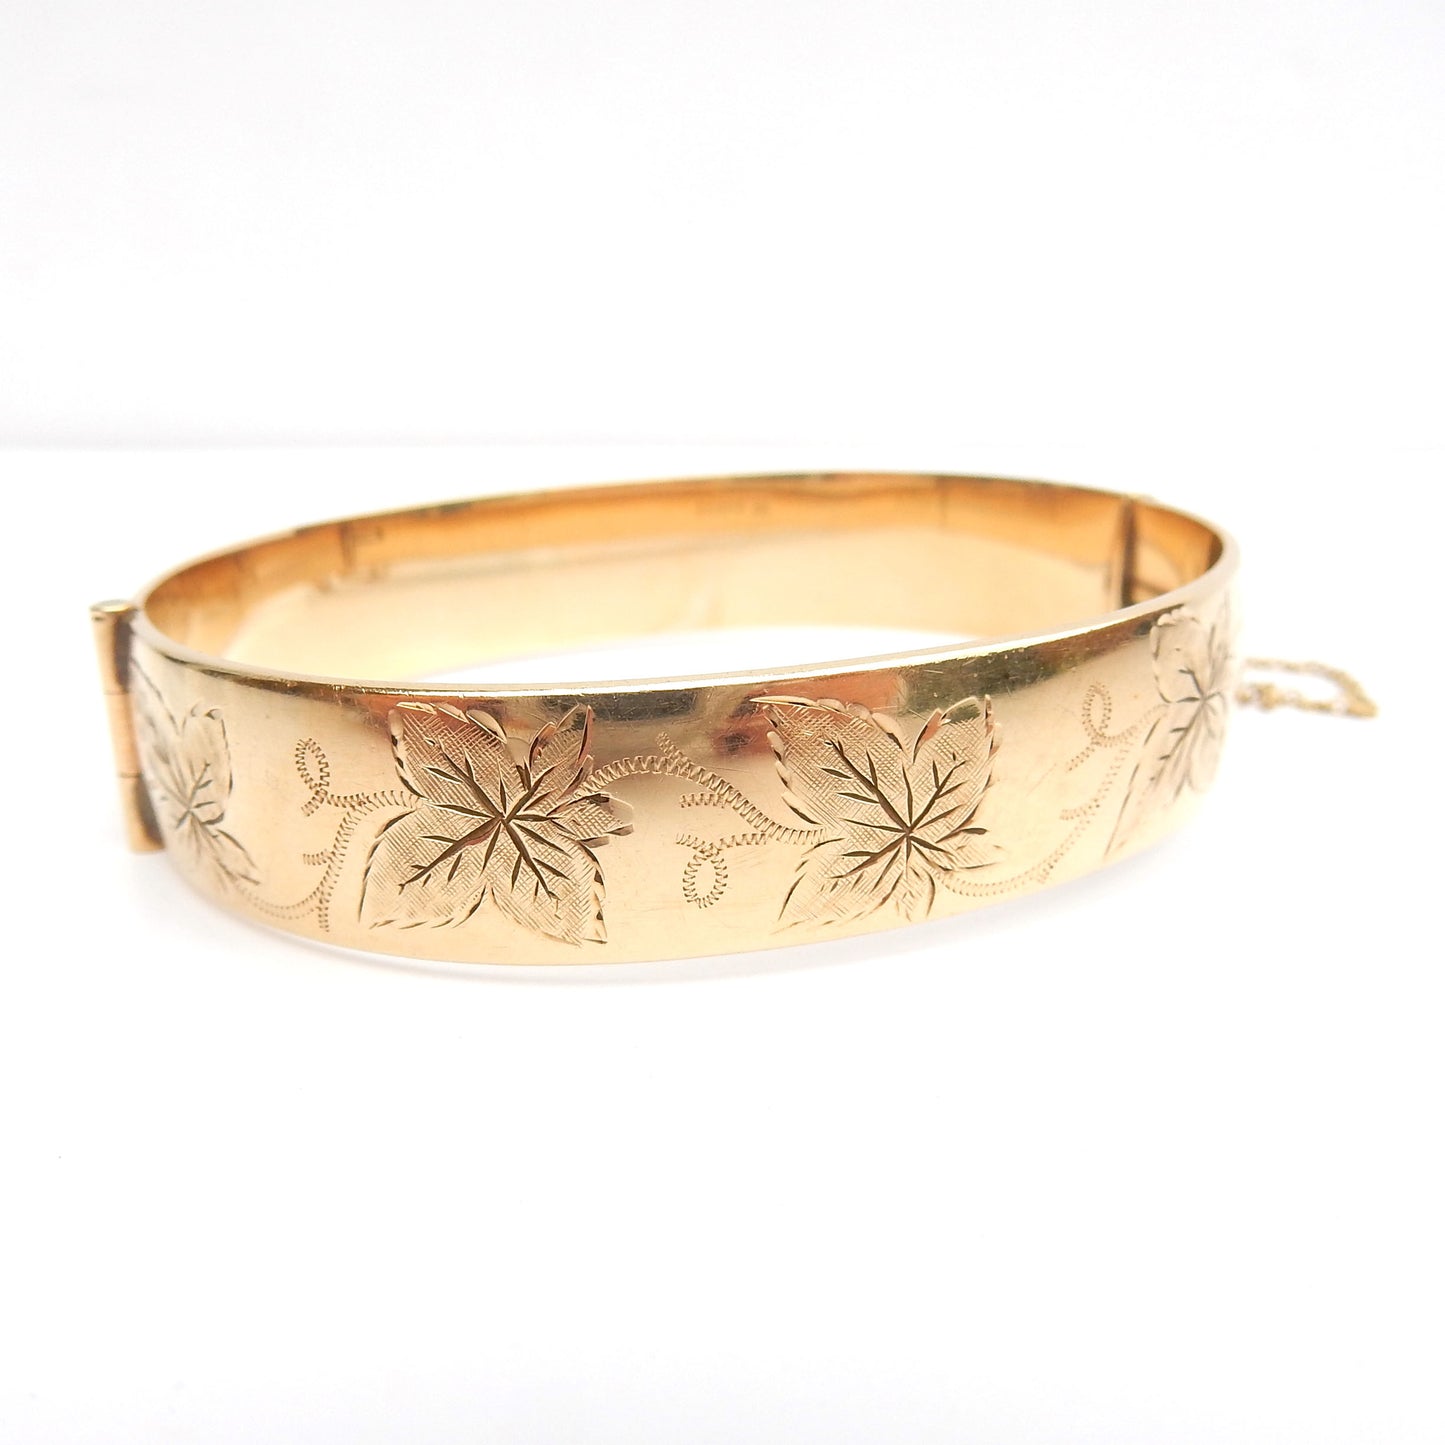 Antique 9ct Rolled Gold Engraved Ivy Leaf Bangle Bracelet